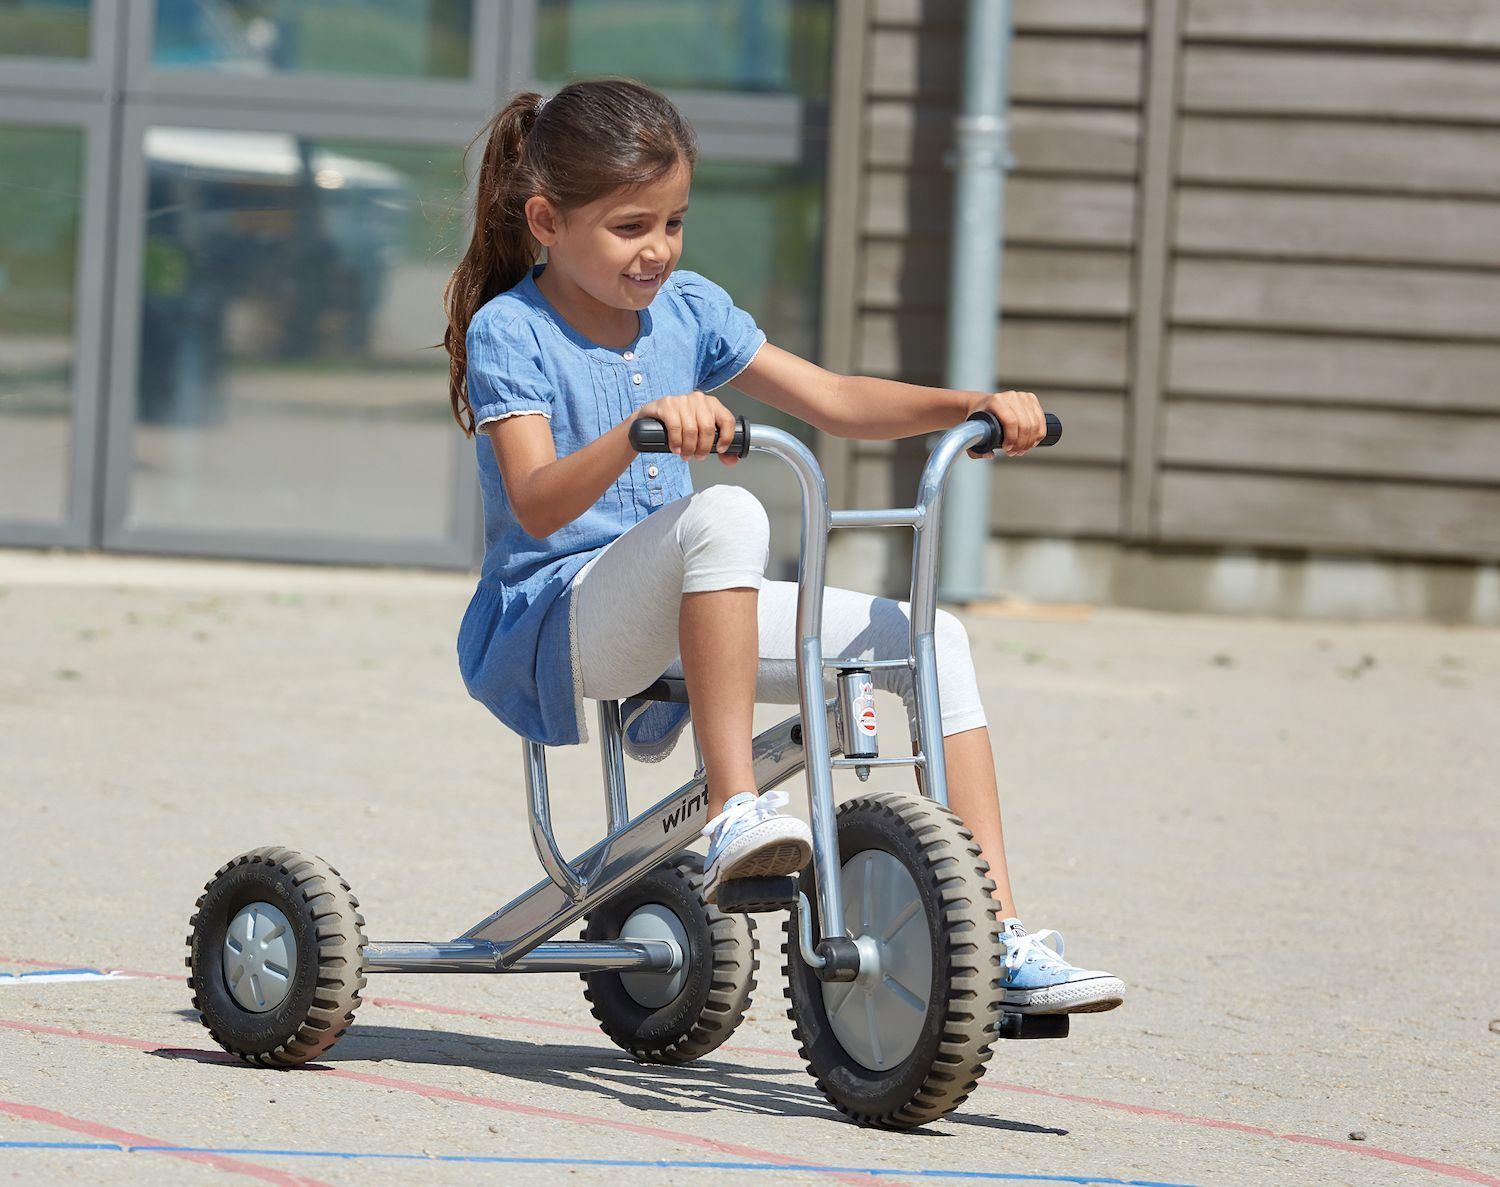 Dreirad Offroad gross Aktion - Winther Viking - Kinderfahrzeug für Kitas und andere Institutionen